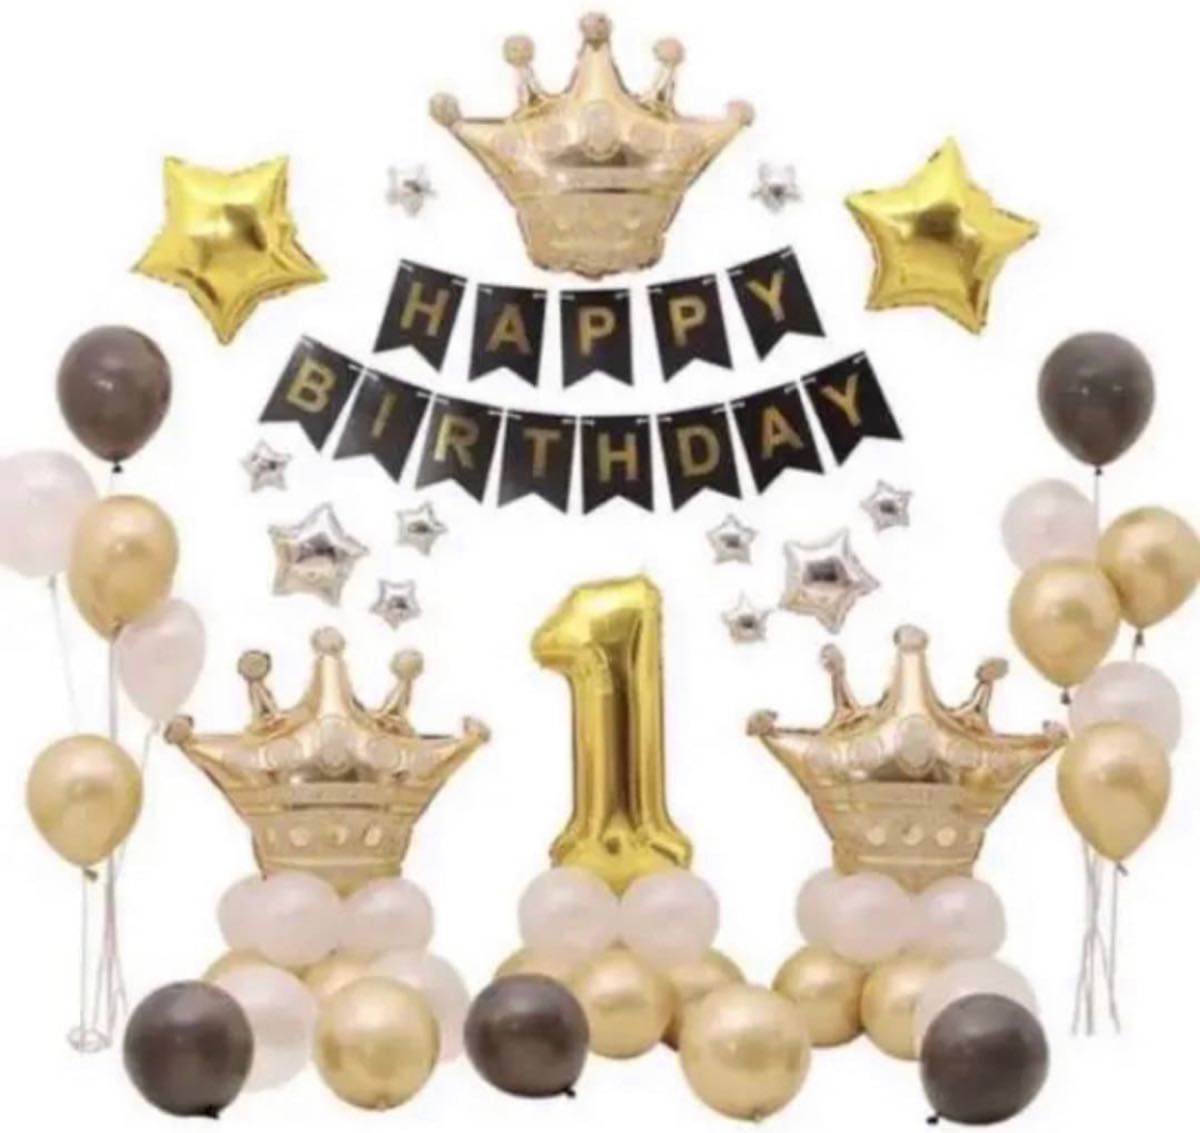 パーティー ゴールド バルーン 1歳 誕生日 バースデー 風船 ガーランド 王冠